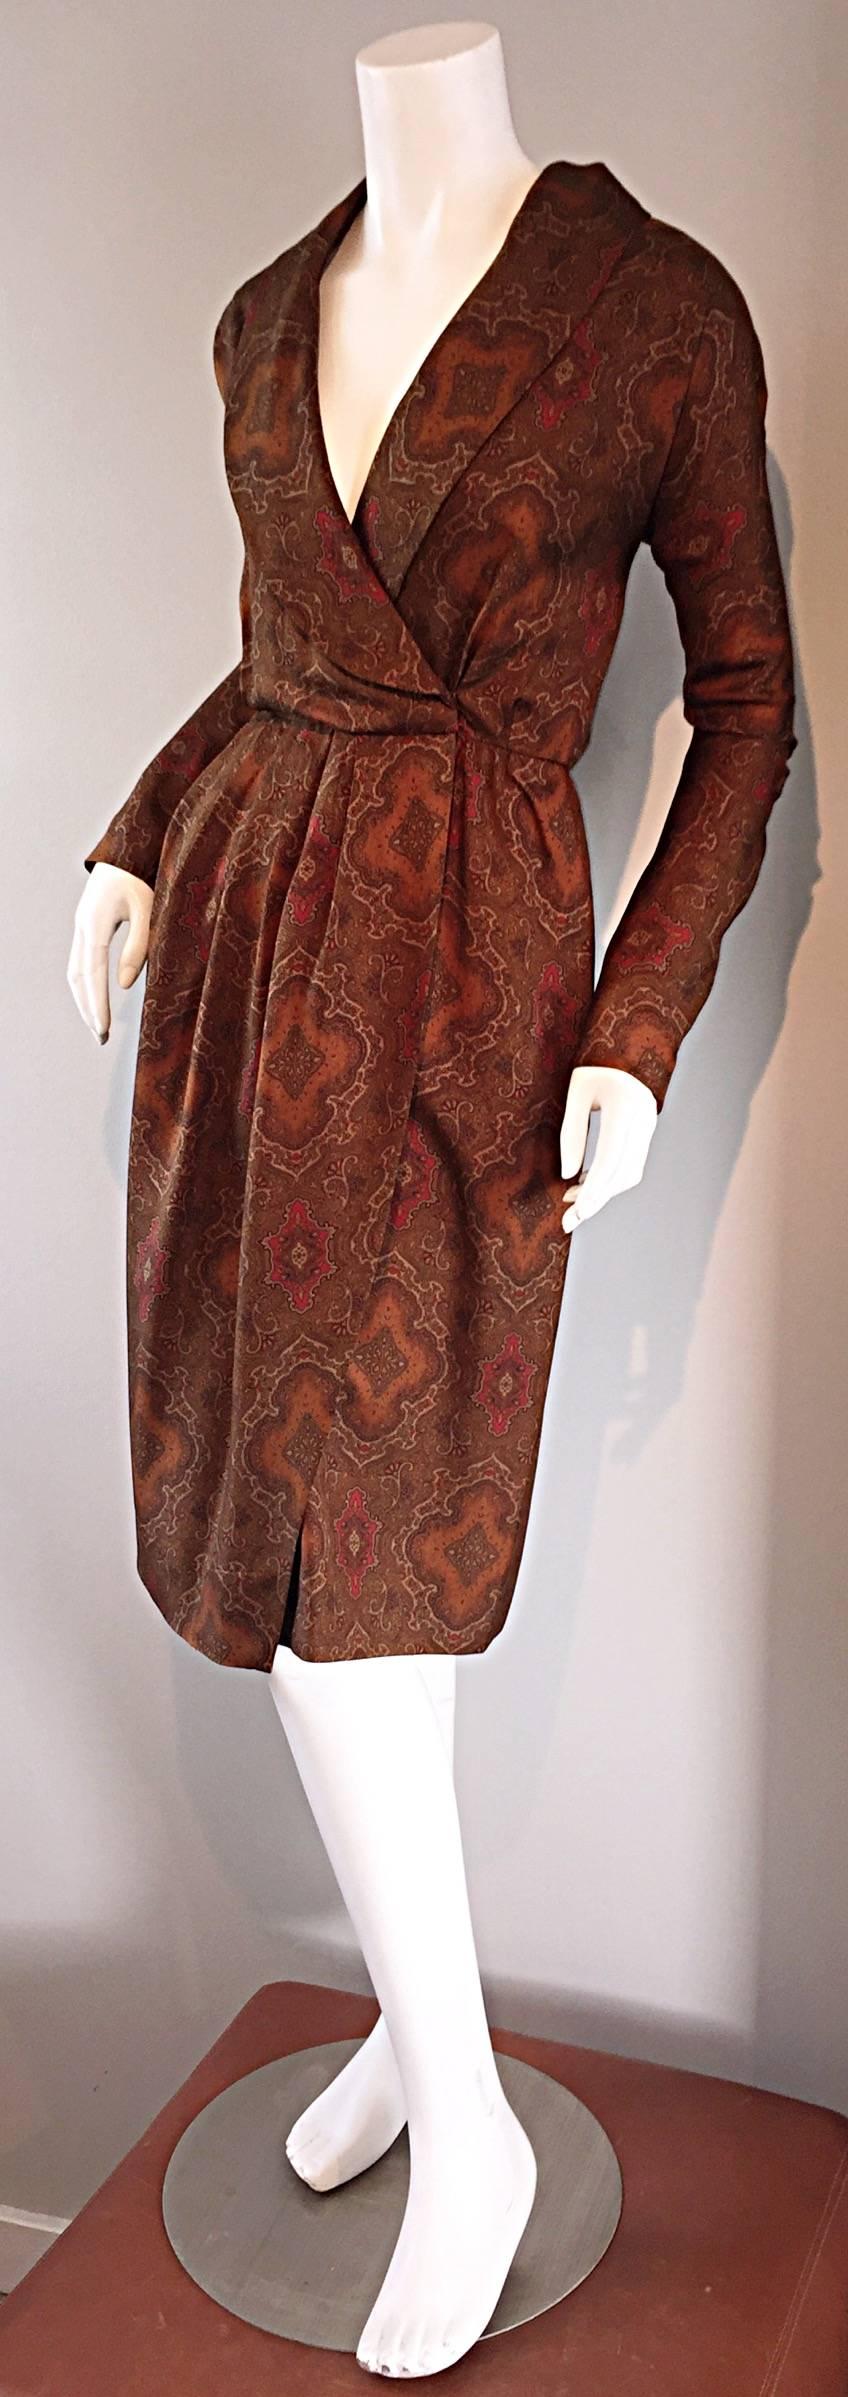 silk shawl for dress